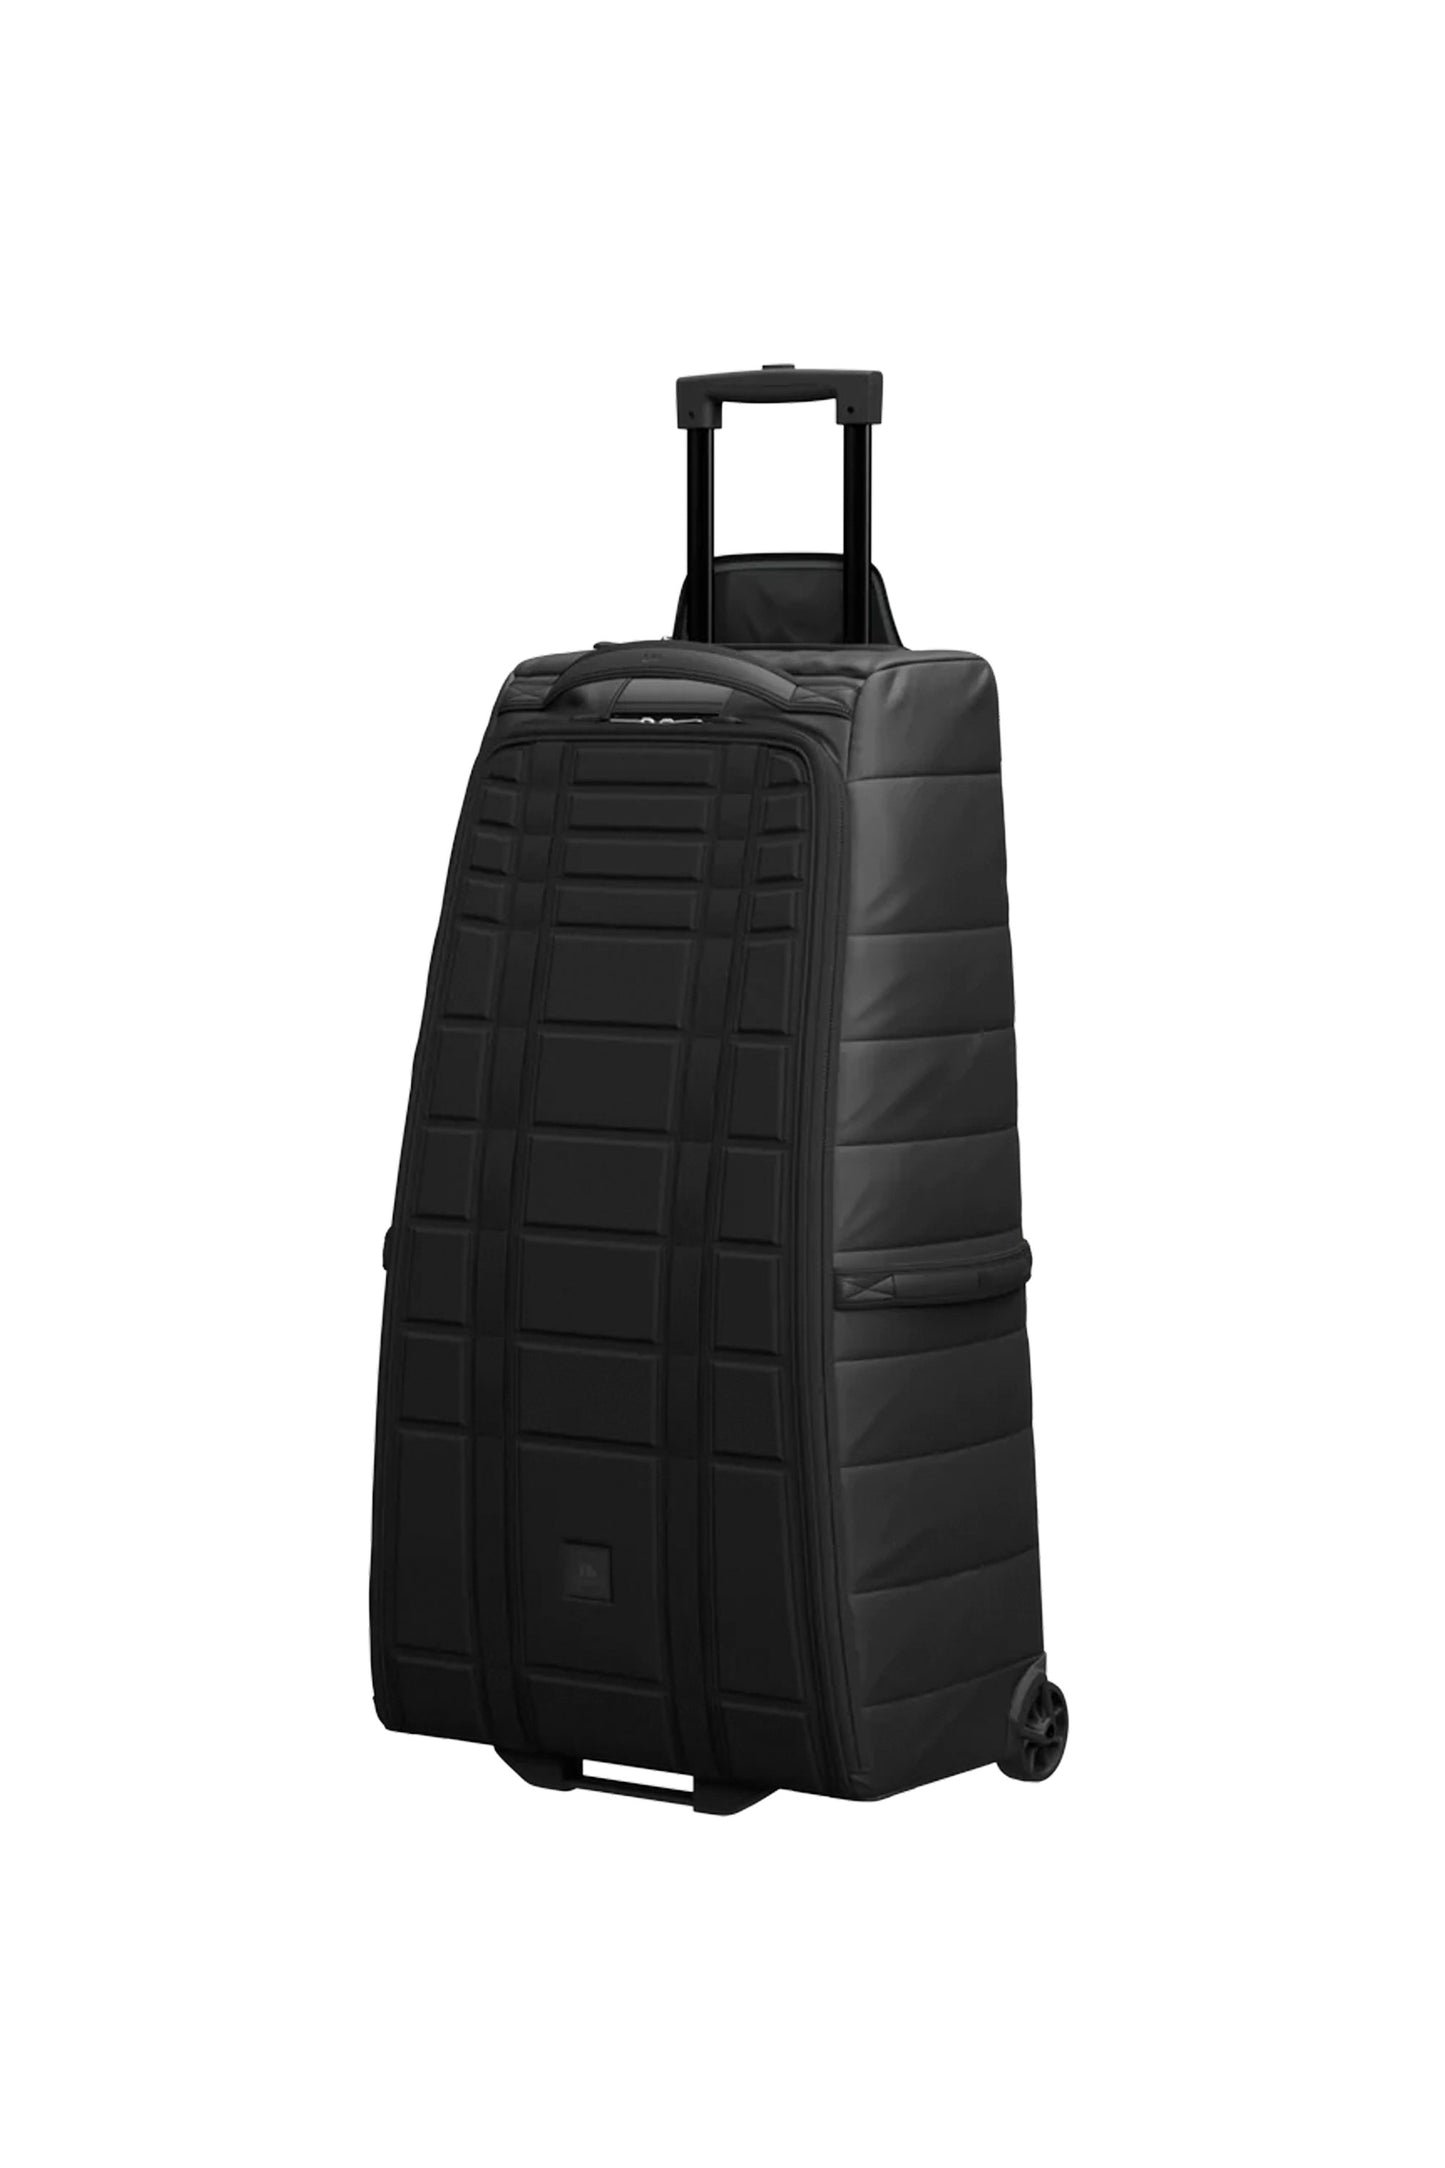 Pukas-Surf-Shop-Db-Journey-backpack-hugger-roller-bag-90l-black-out